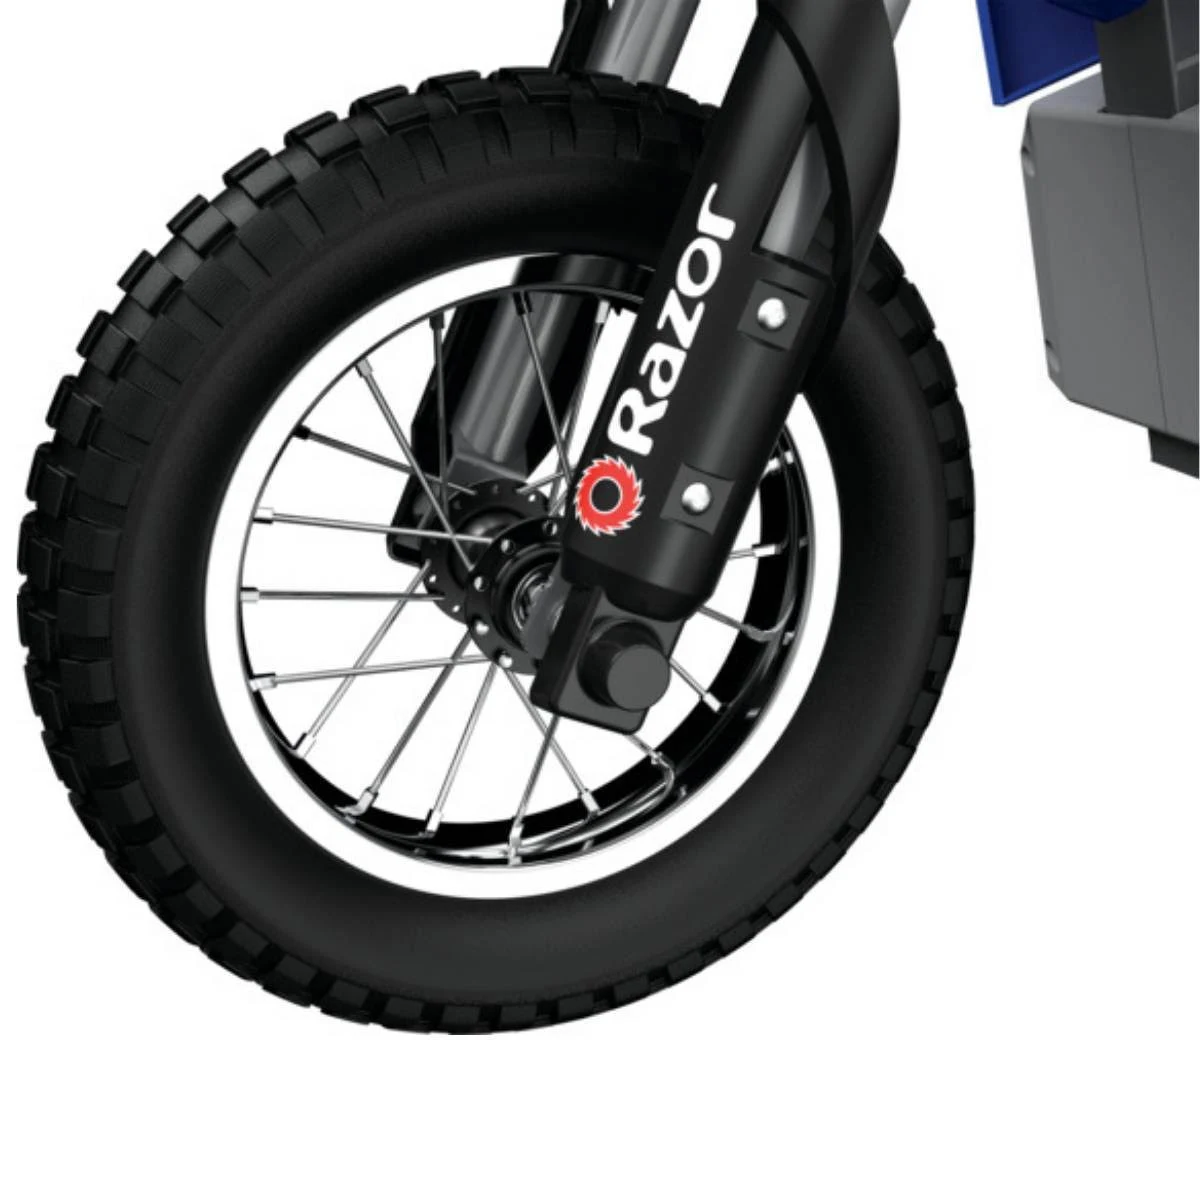 Razor Dirt Rocket MX350 Electric Bike